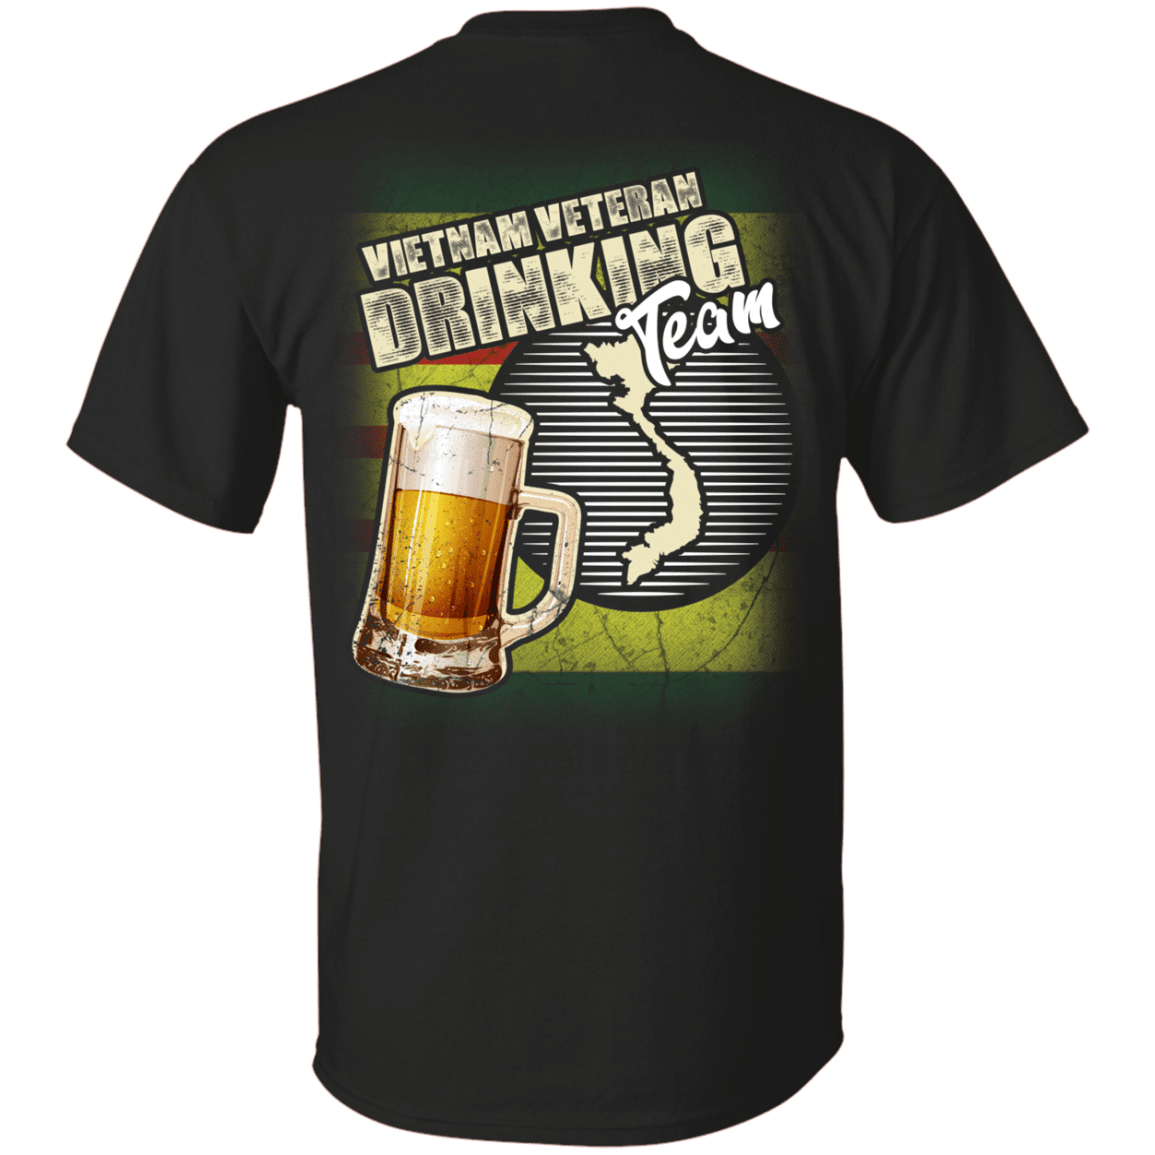 Military T-Shirt "Vietnam Veteran Drinking Bear Team Back"-TShirt-General-Veterans Nation